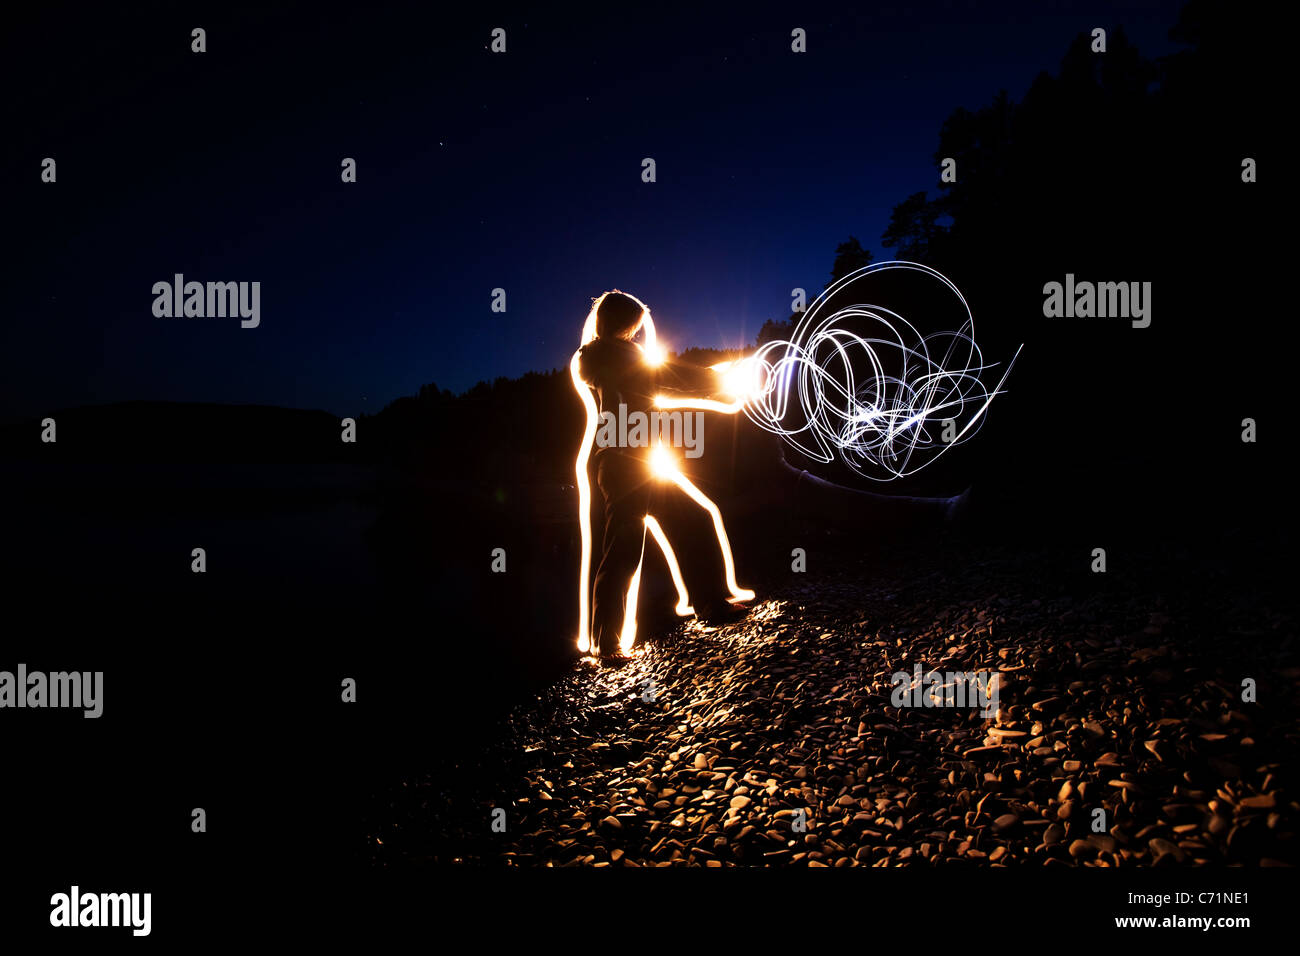 Eine Frau schickt Energie durch ihren Körper und ihre Hände bei Sonnenuntergang in Idaho. Dieses Lightpainting-Bild wurde mit einer langen ex erstellt. Stockfoto